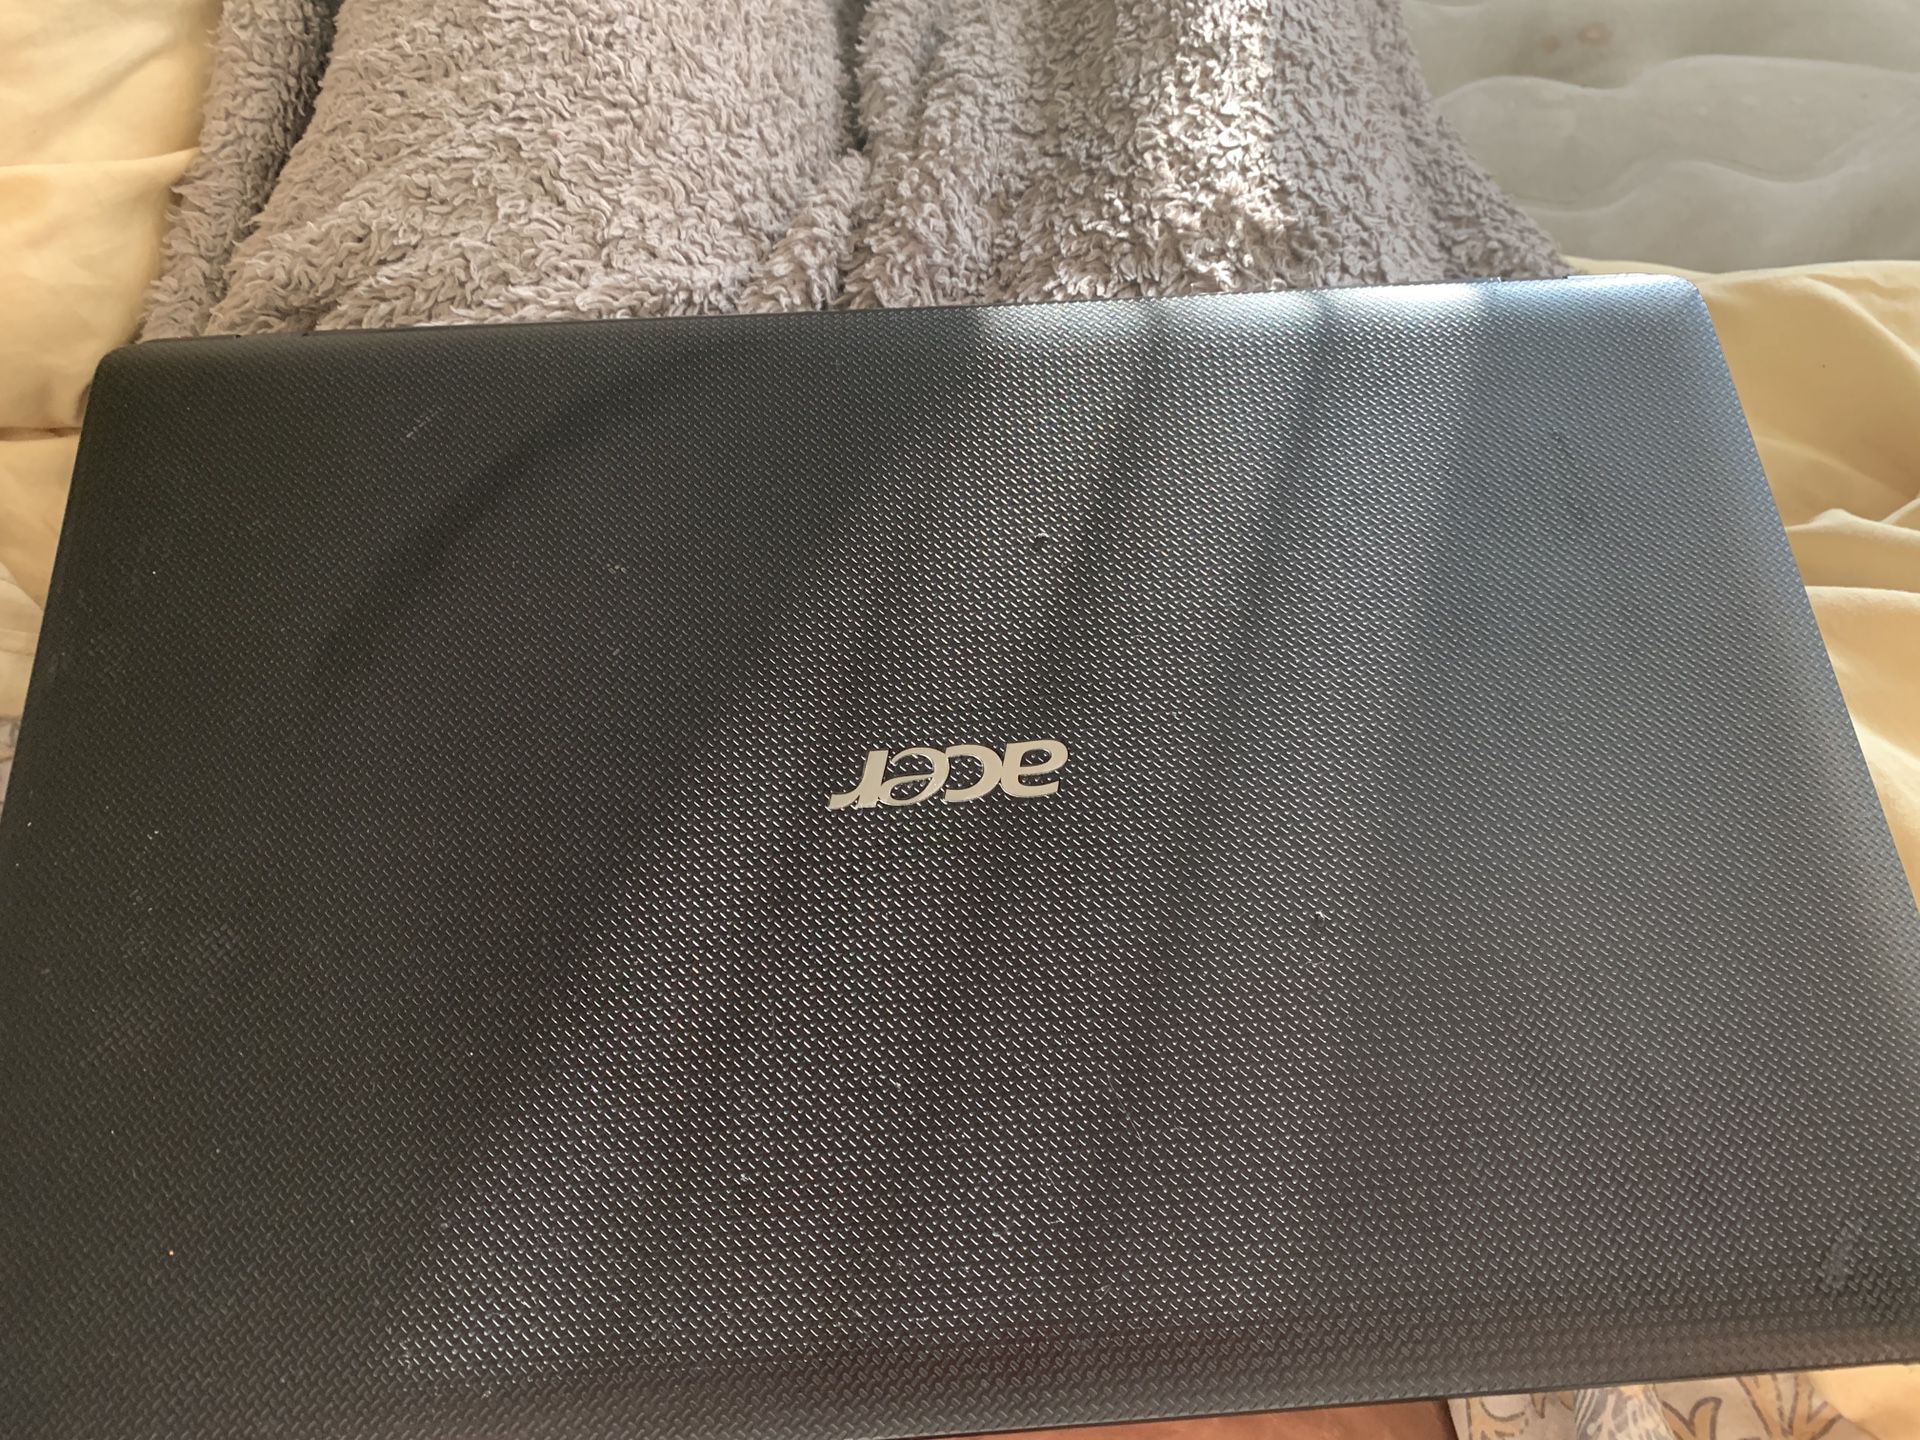 Acer Aspire Laptop 175 OBO